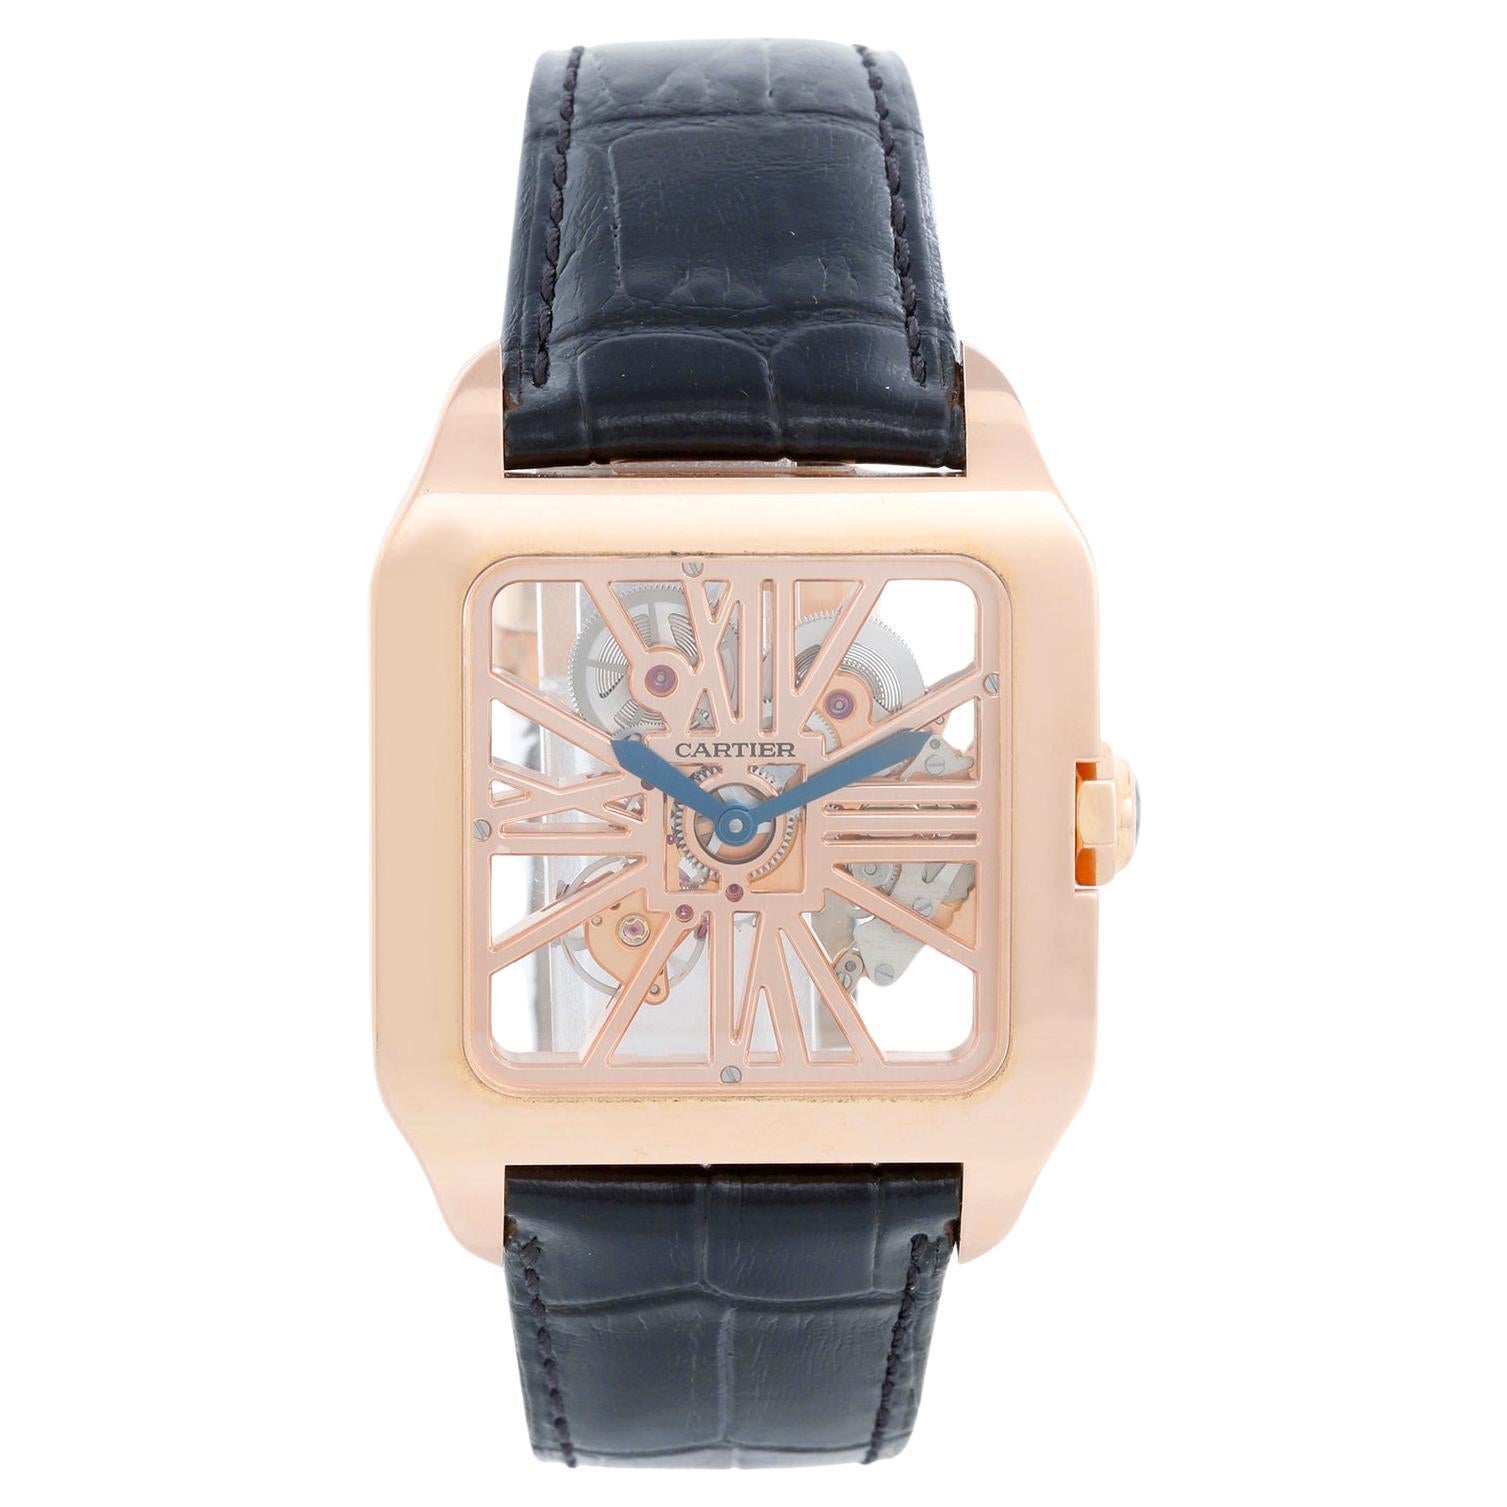 Cartier Santos Dumont XL Skeleton Rose Gold Watch W2020057